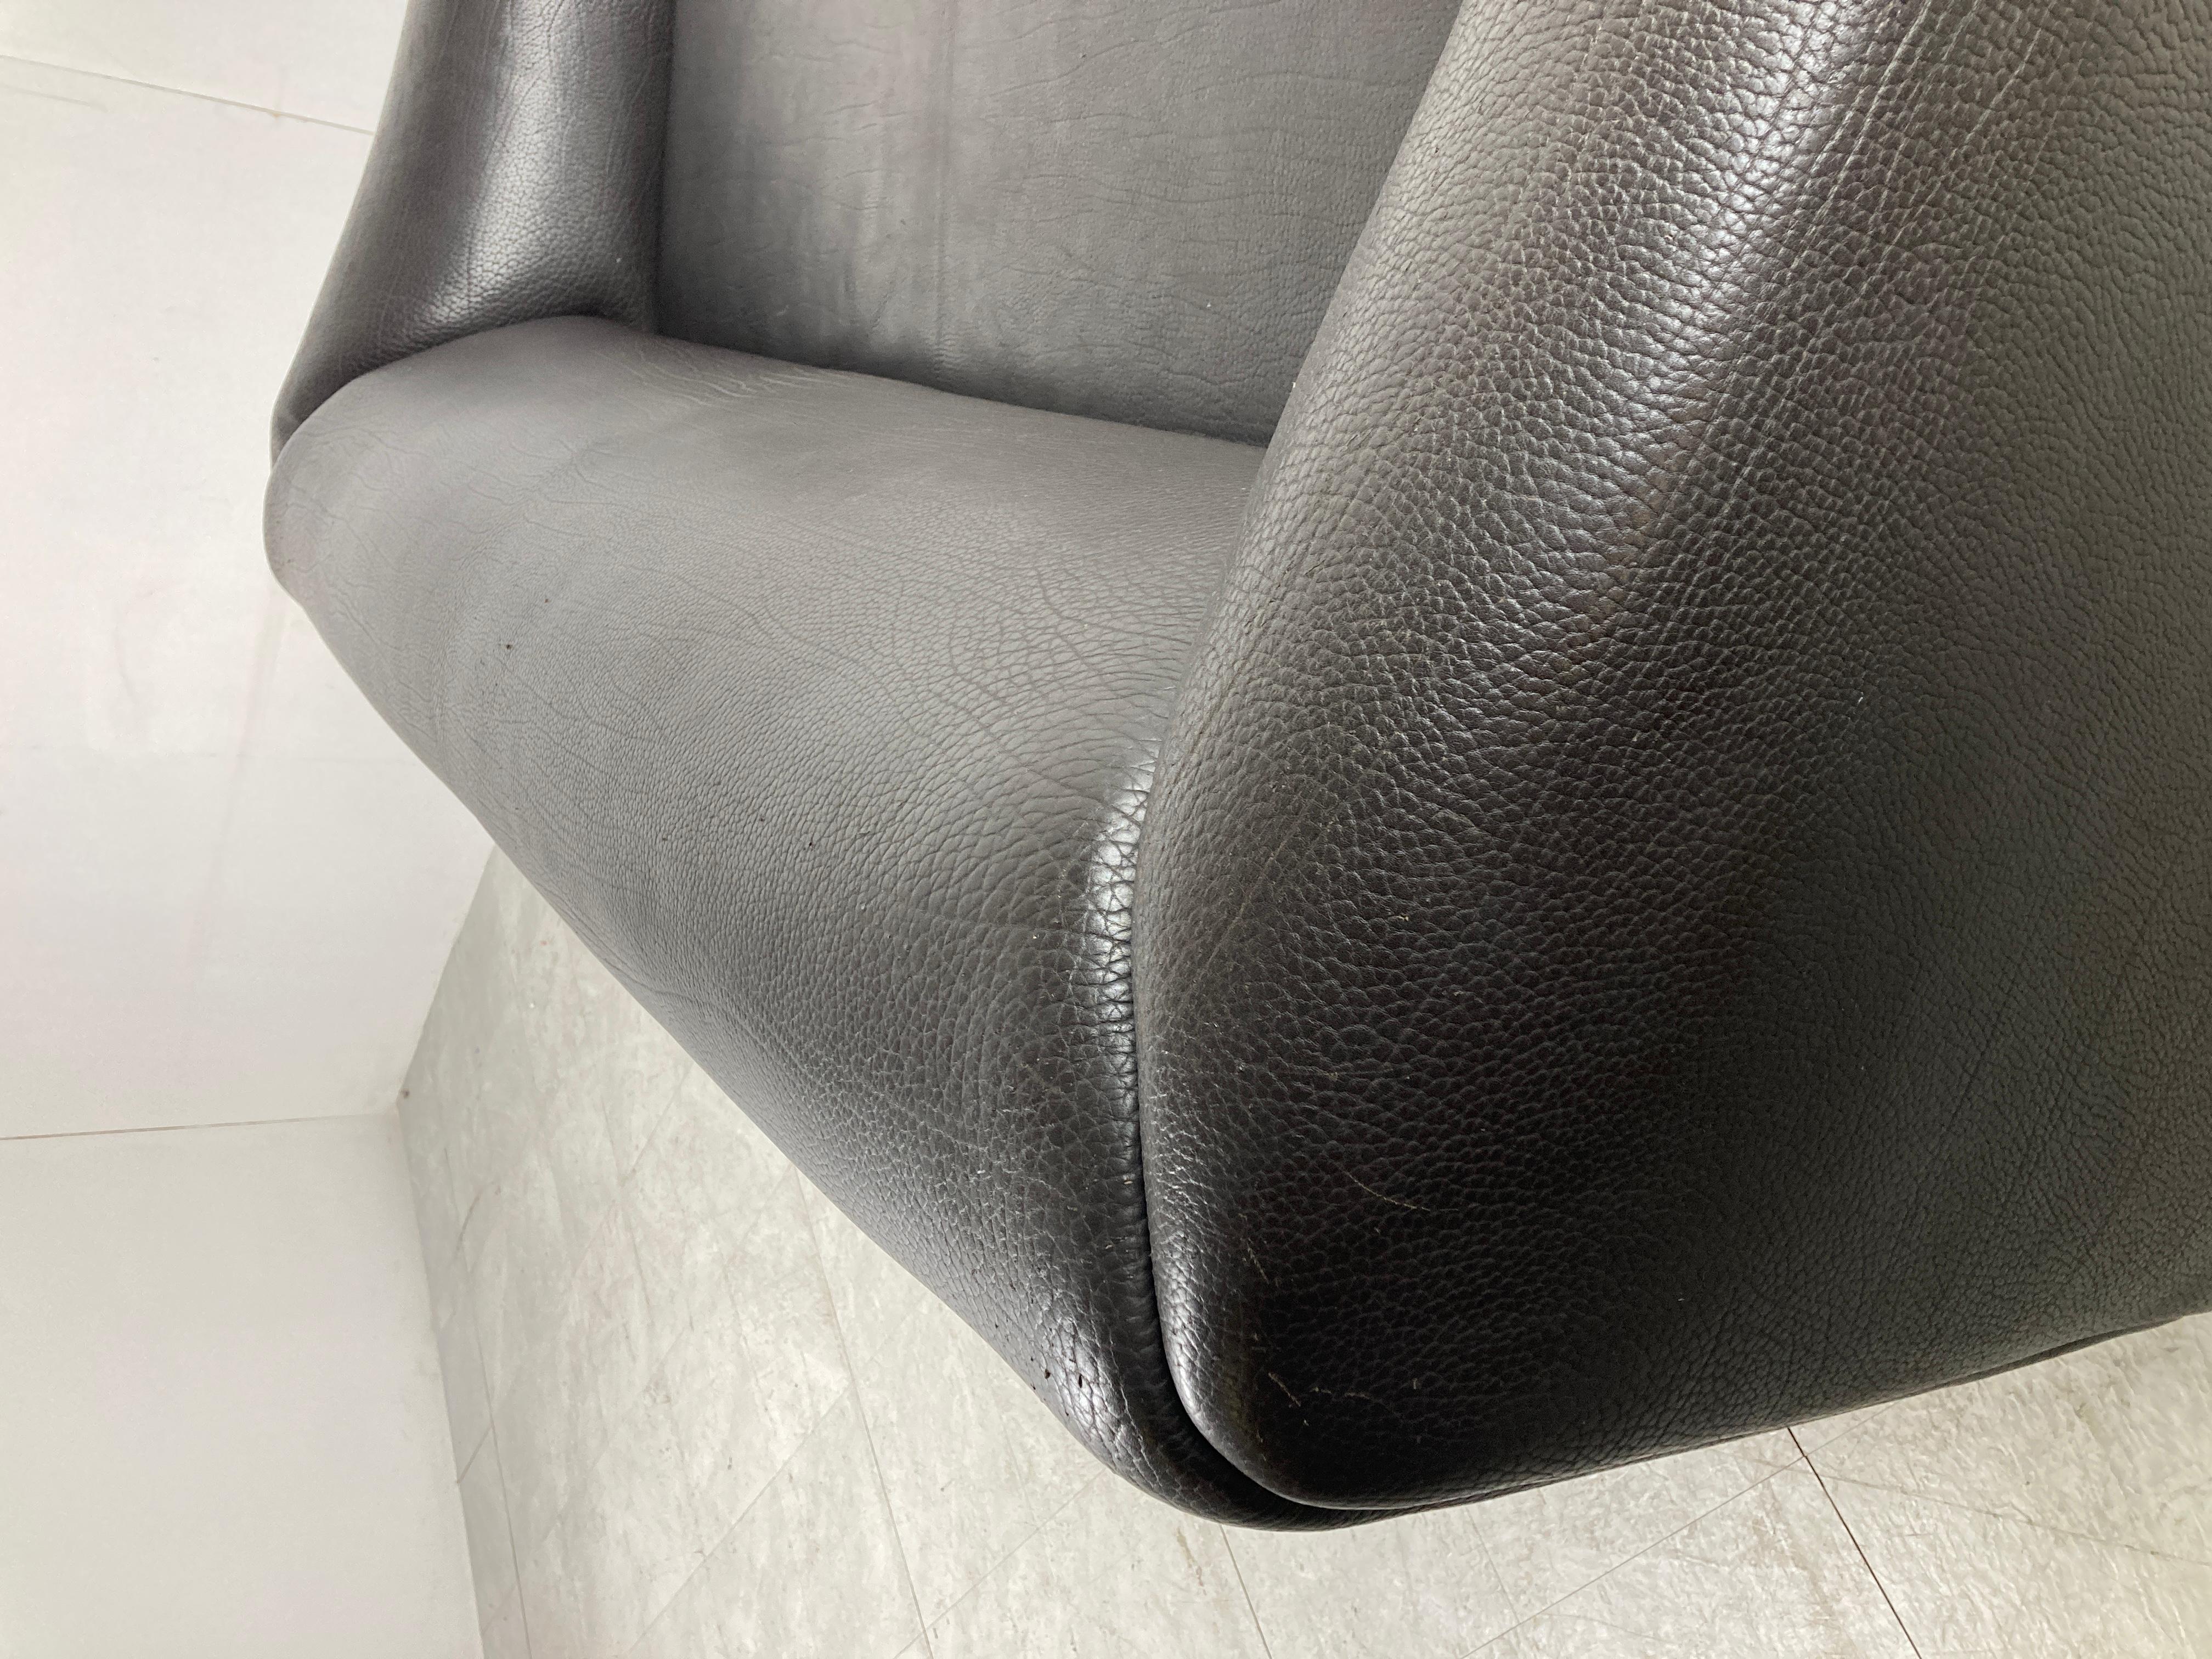 Magnifique canapé DS47 en cuir noir de De Sede.

De Sede, réputé pour utiliser des cuirs de la meilleure qualité, a créé de magnifiques canapés.

Celui-ci ne fait pas exception à la règle et dispose d'un revêtement en cuir très épais au niveau du